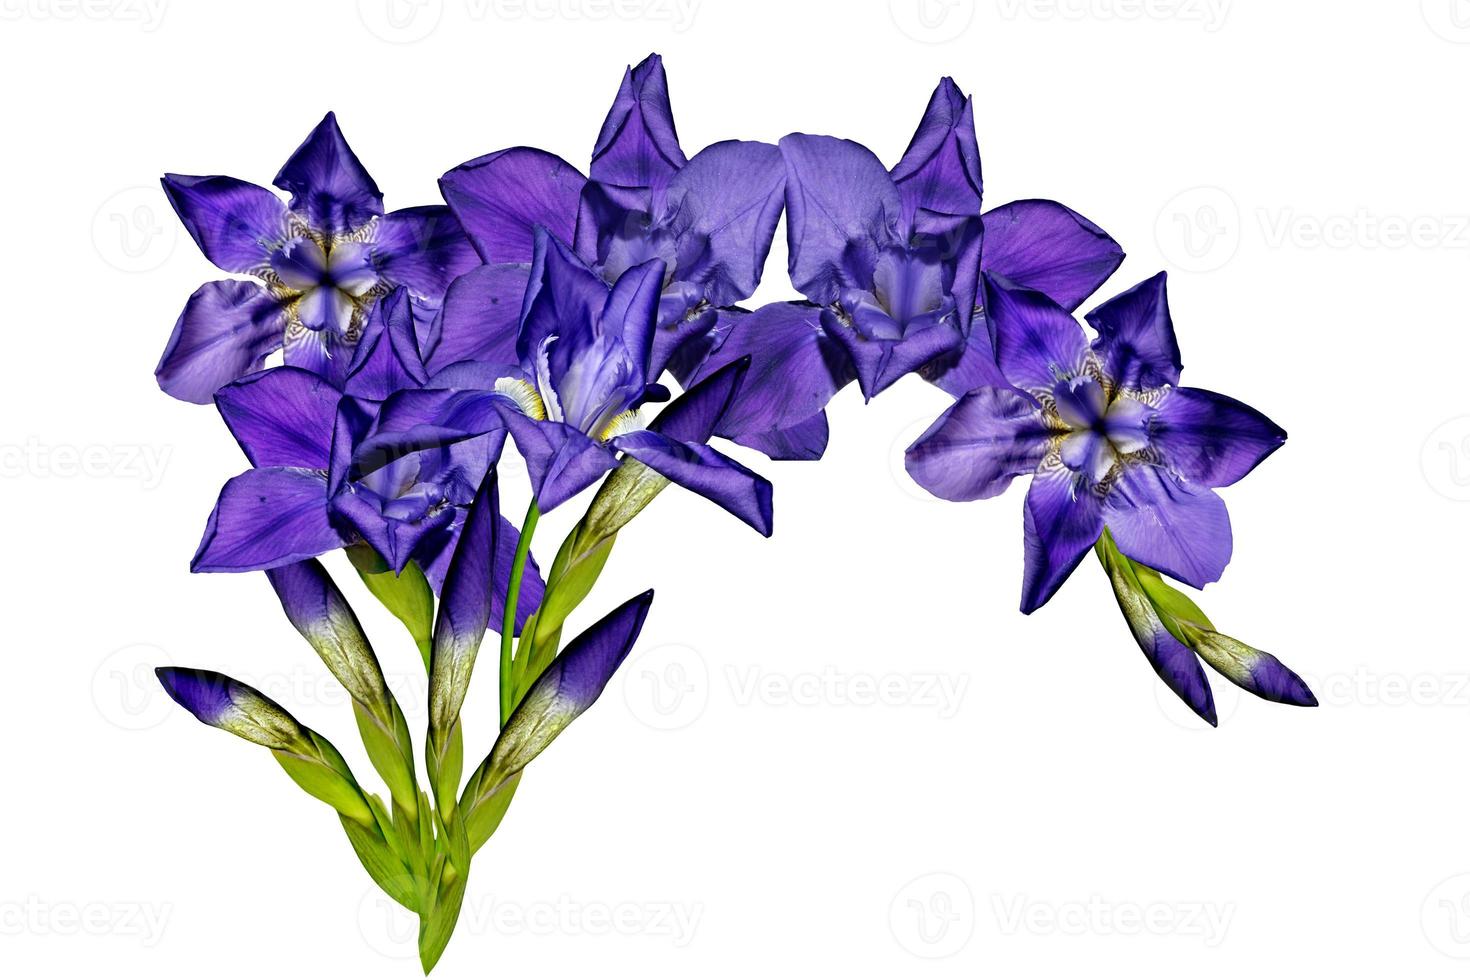 blue iris flowers isolated on white background photo